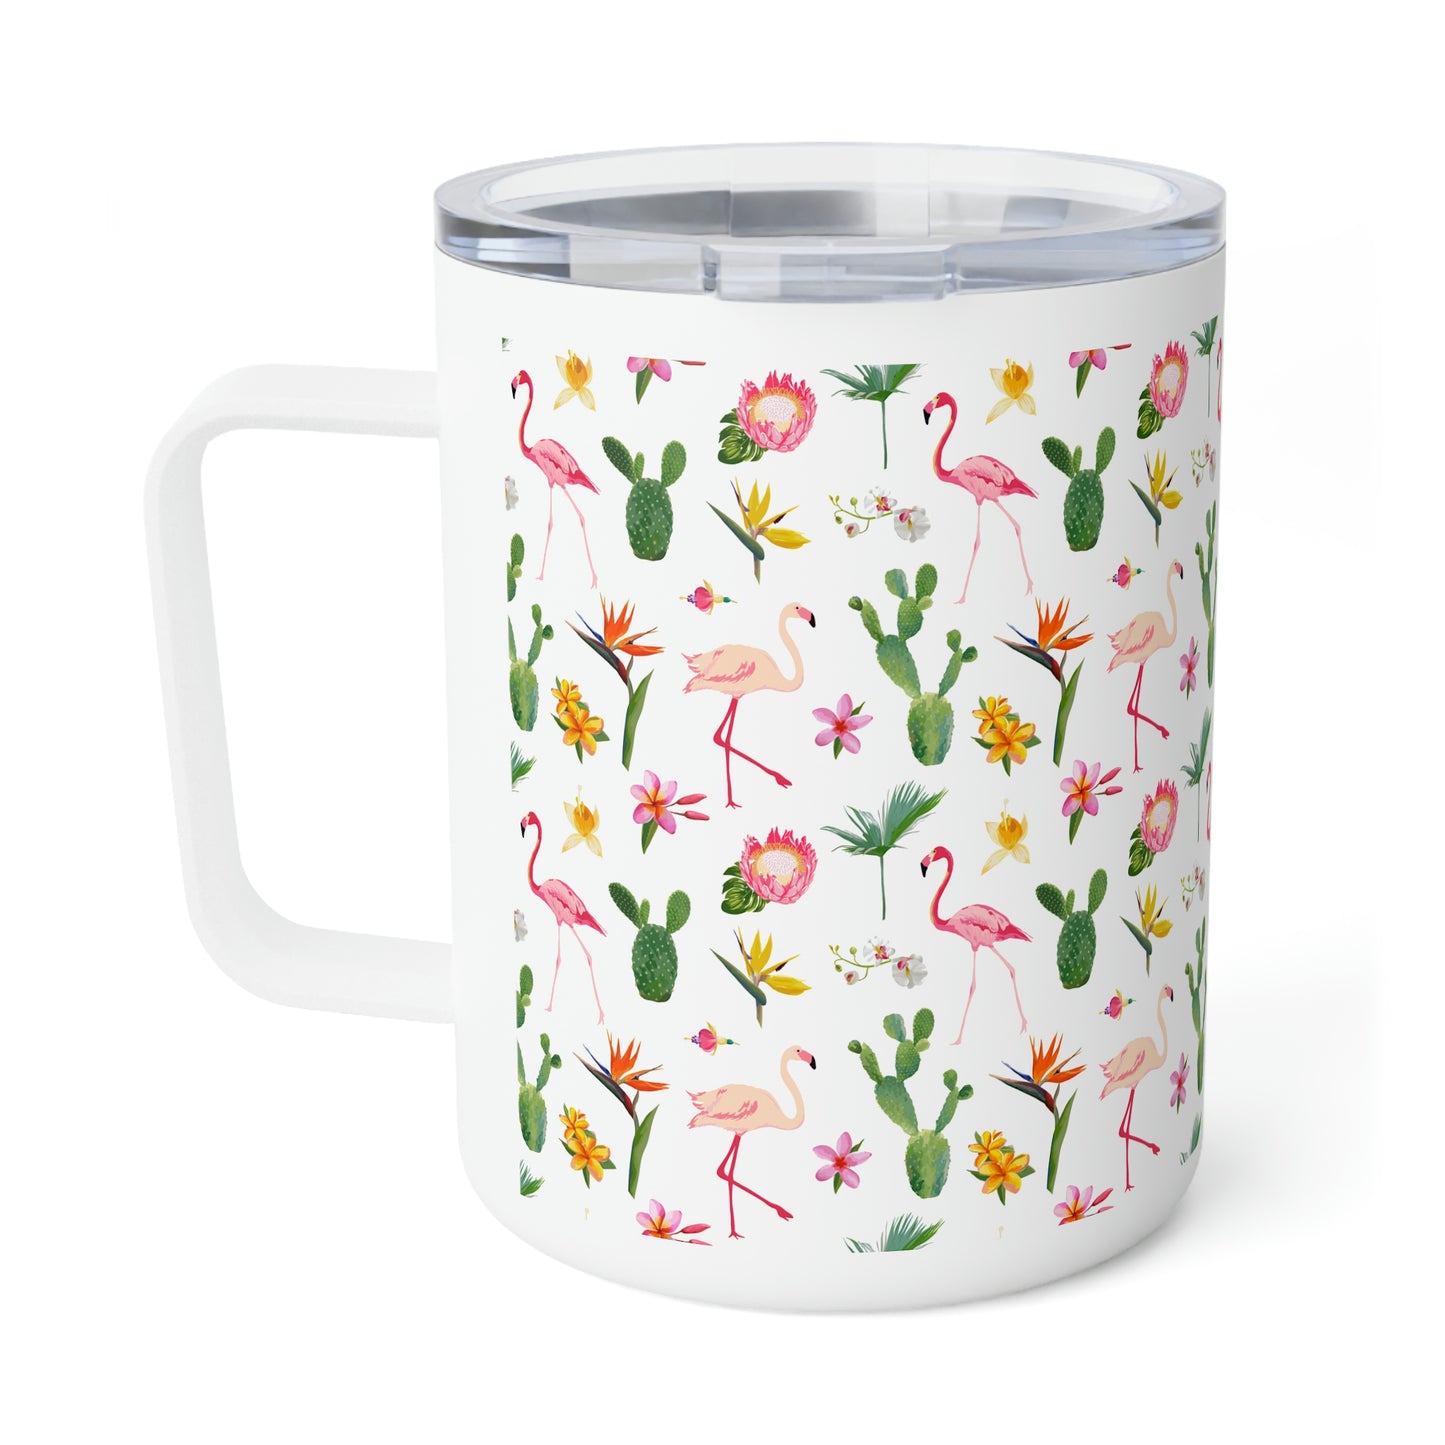 Cactus and Flamingos Insulated Coffee Mug, 10oz